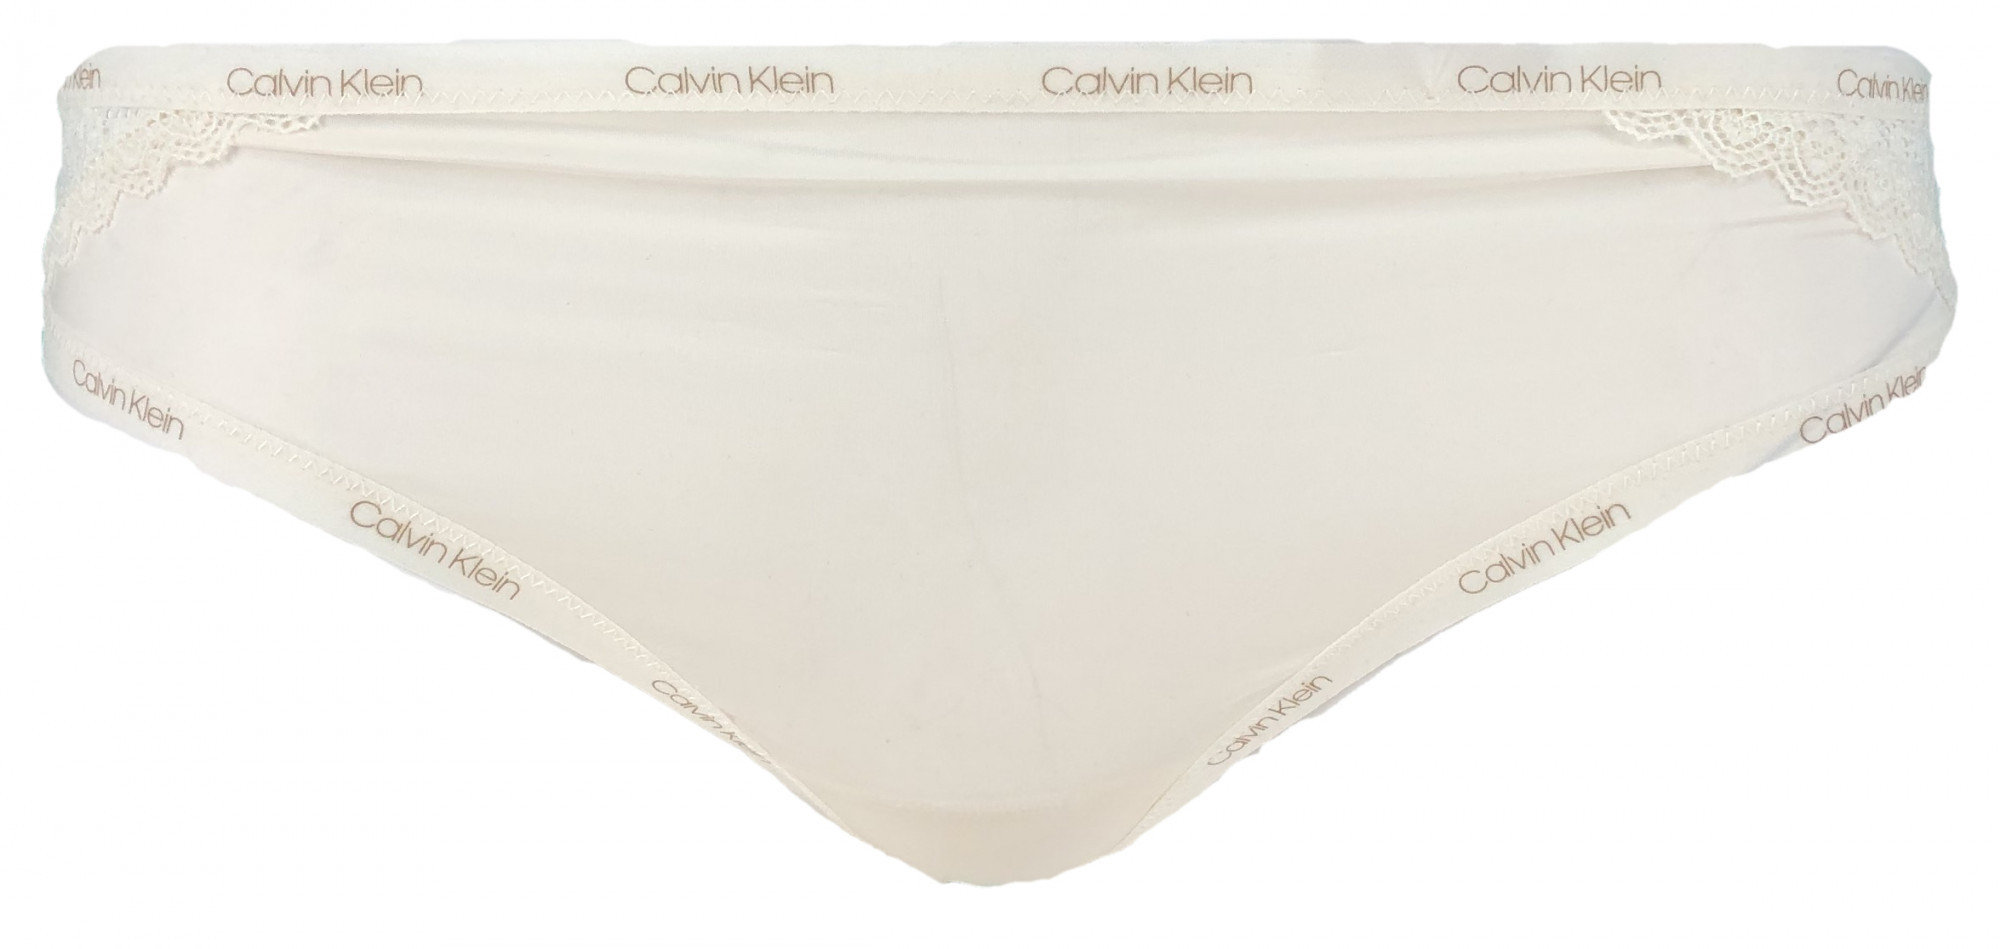 Brazilské kalhotky QF5152E - 101 - krémová - Calvin Klein krém XS